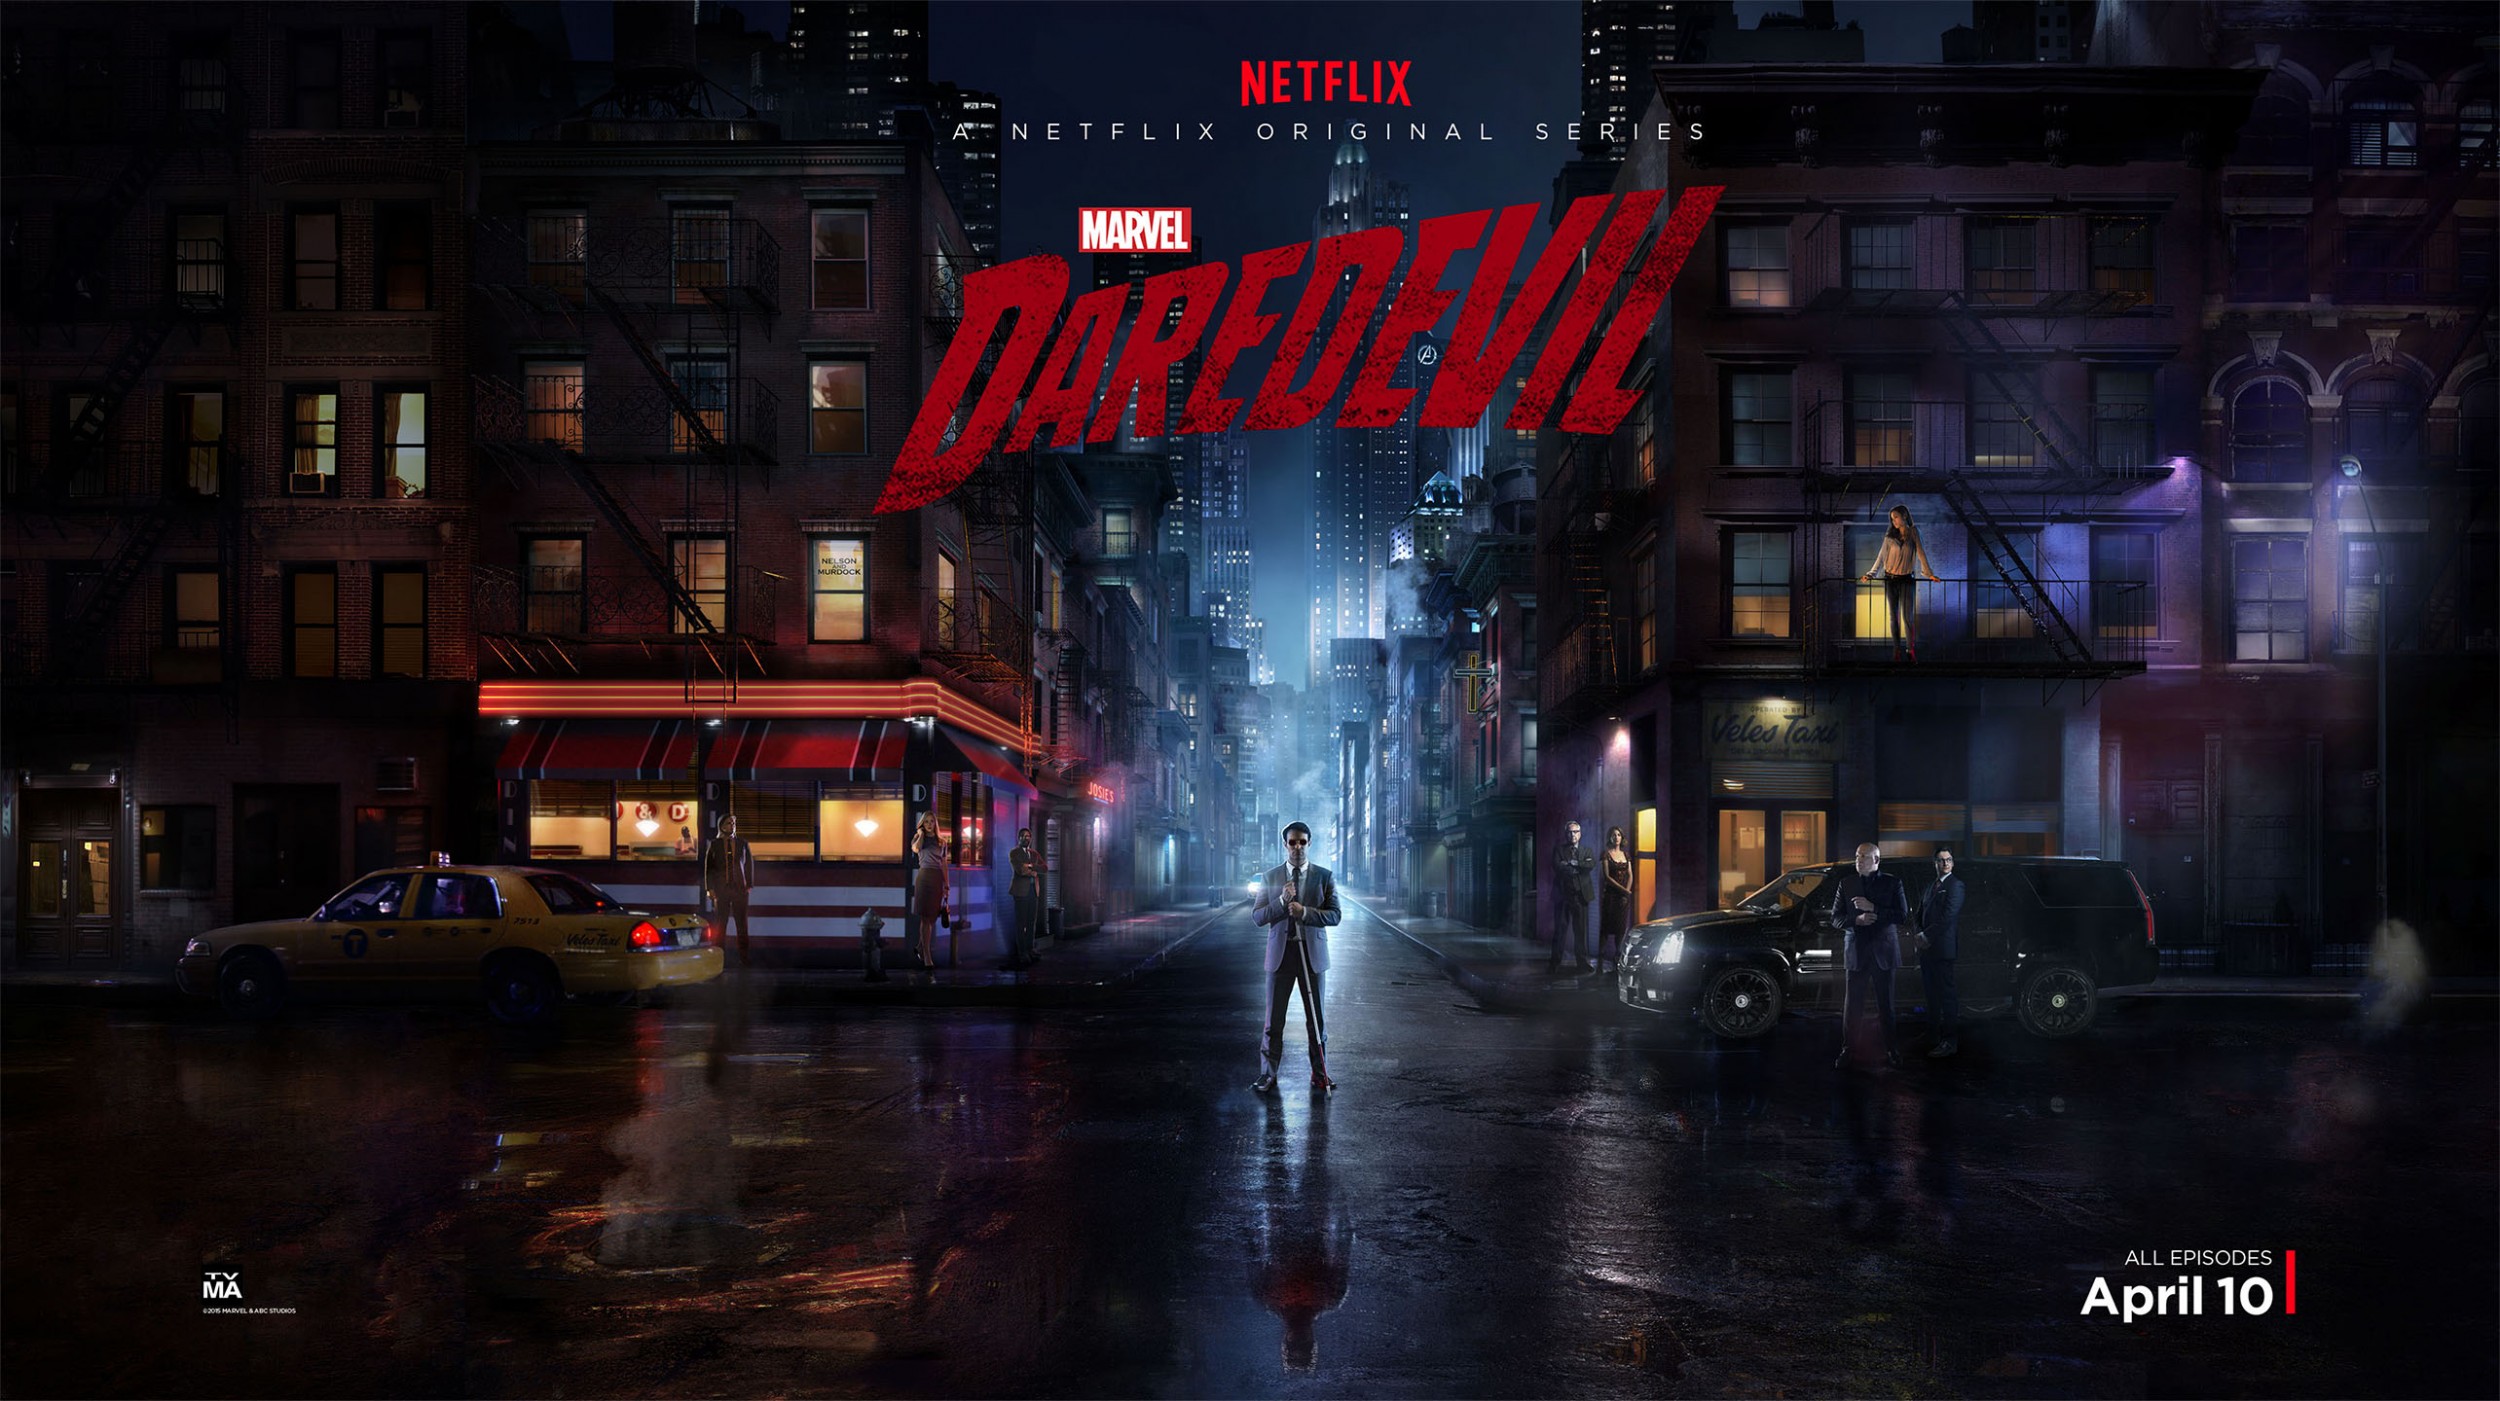 Mega Sized TV Poster Image for Daredevil (#9 of 24)